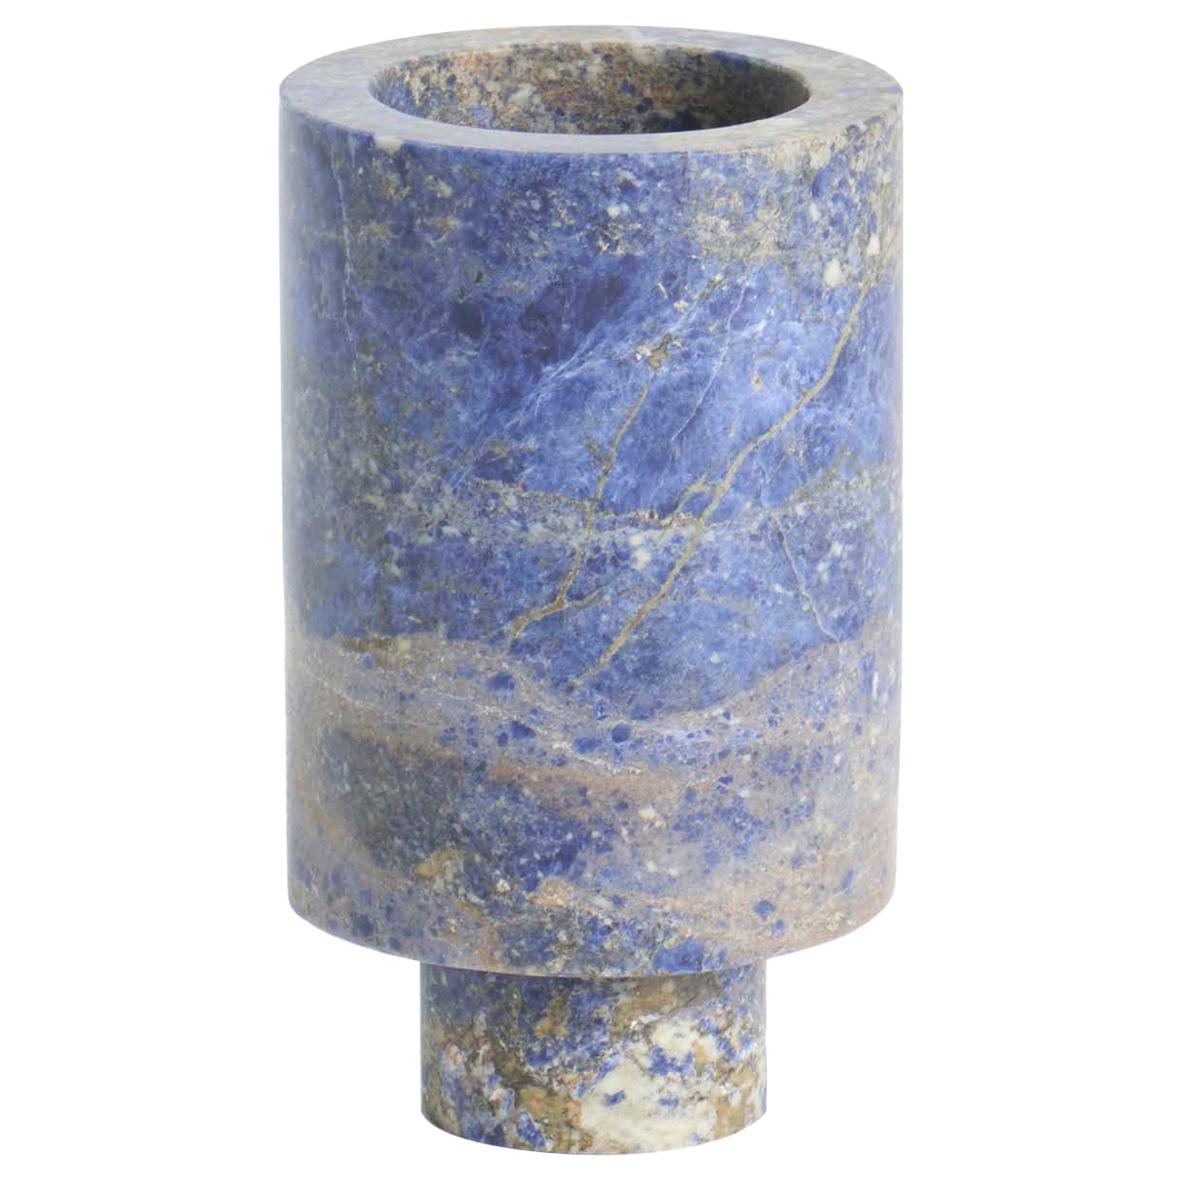 Blaue Vase von innen nach außen von Karen Chekerdjian